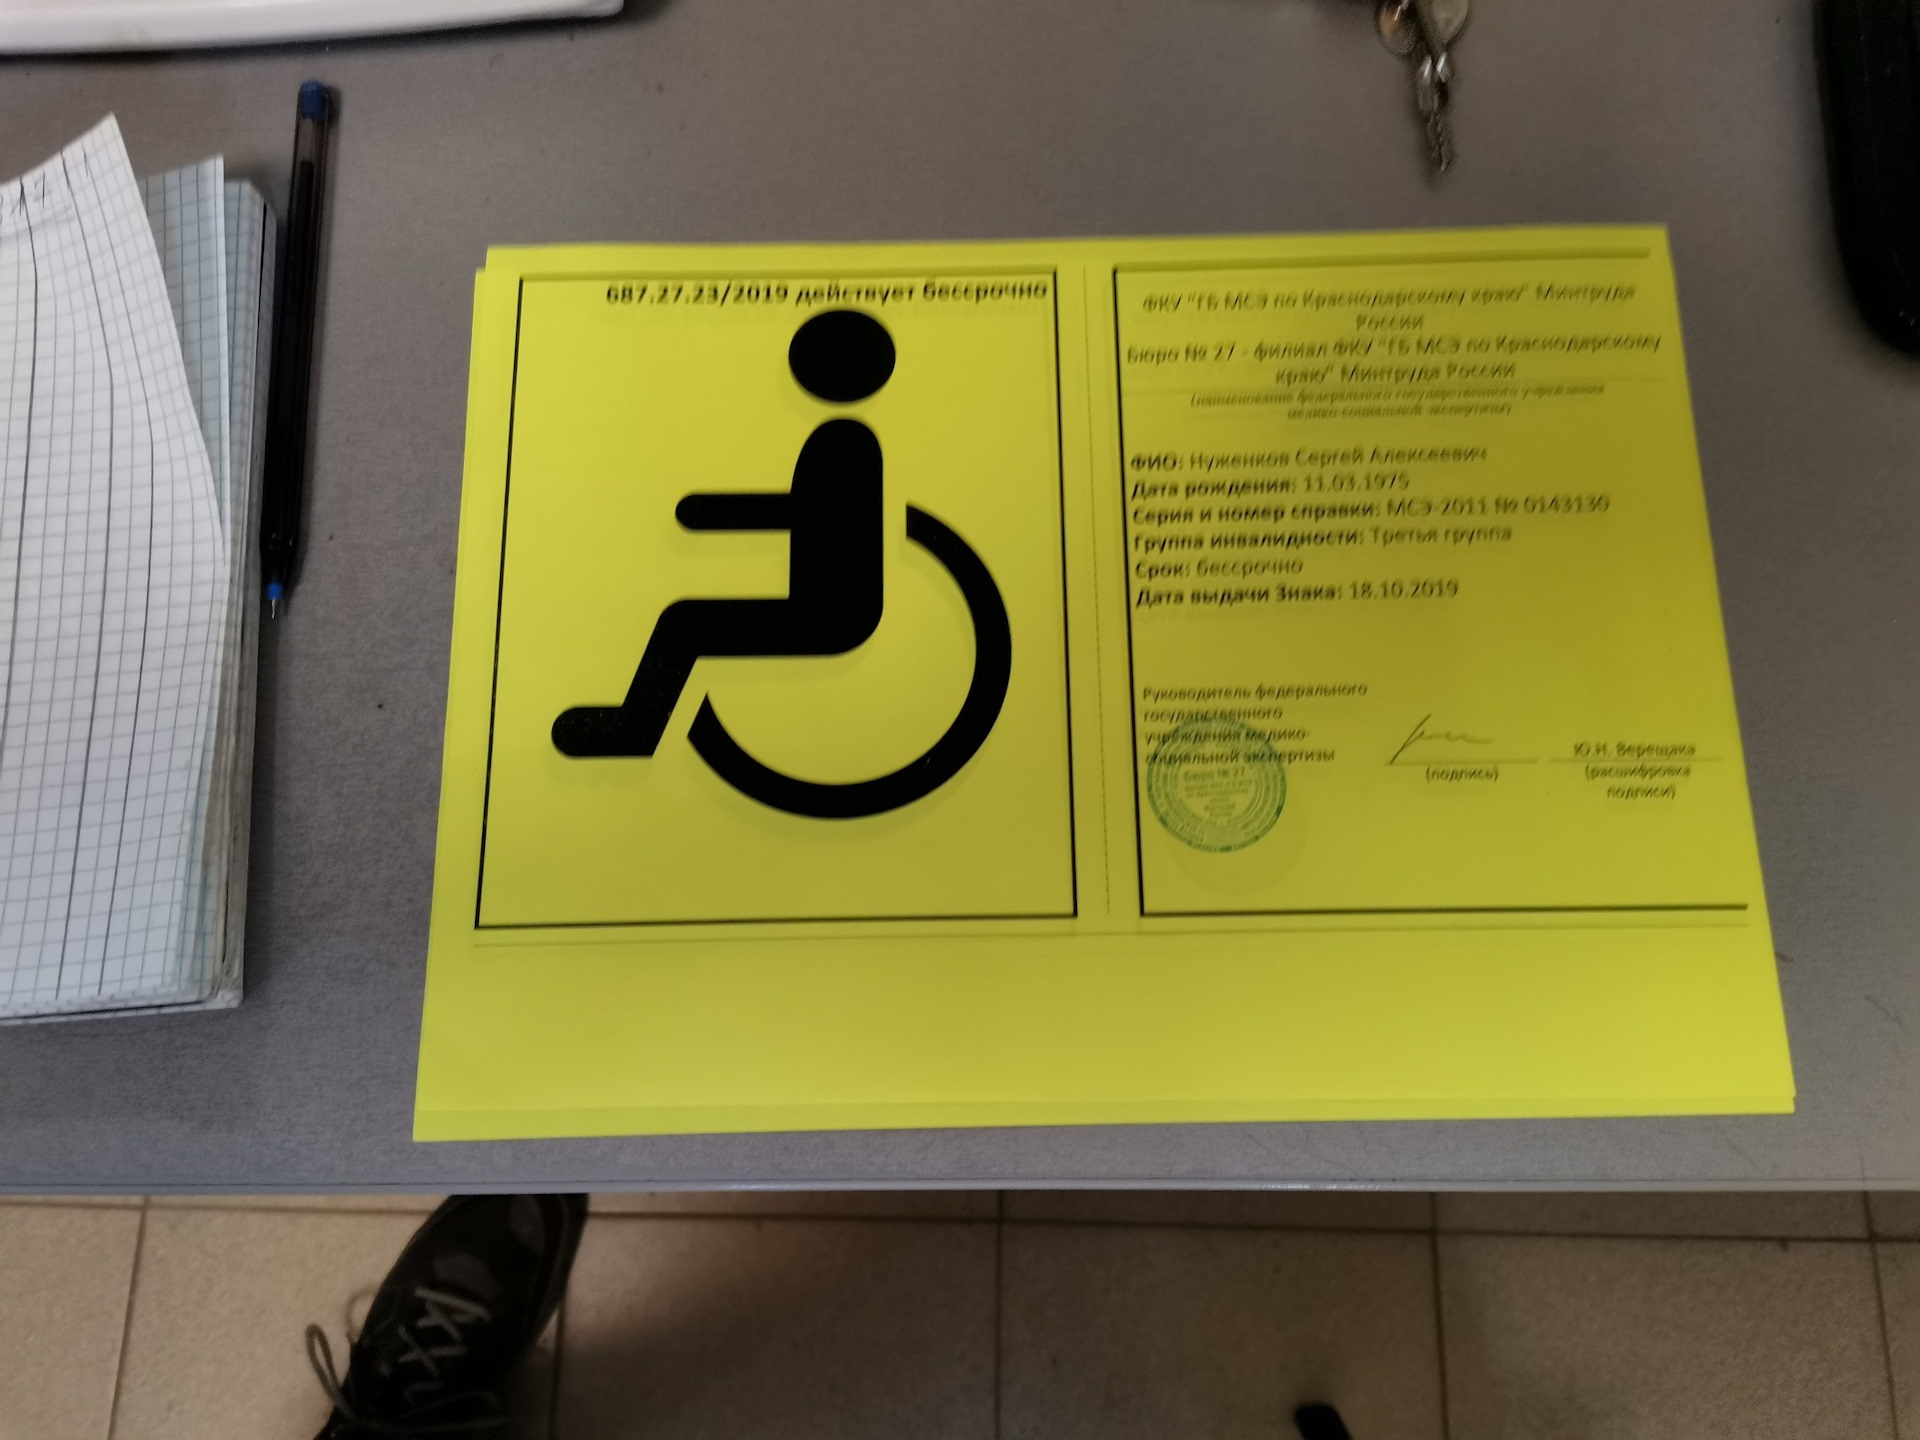 Объявление Инвалидов О Знакомстве 2023